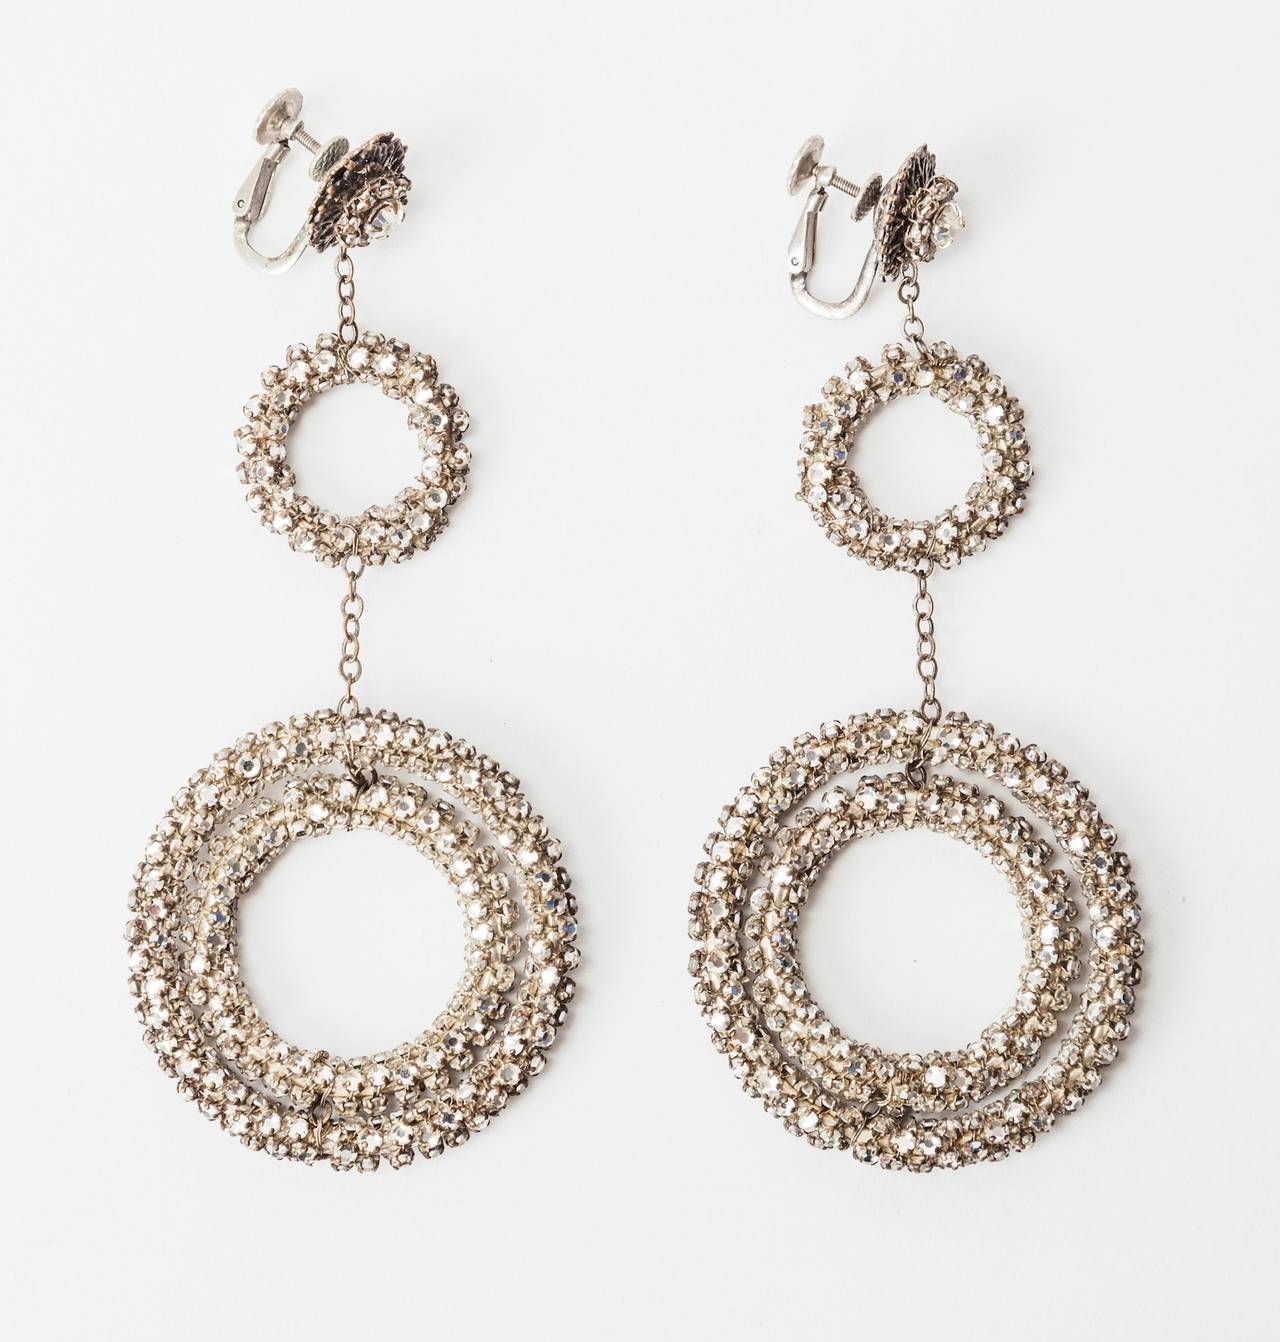 Ungewöhnlich und dramatisch Miriam Haskell  kreisel-Ohrringe mit drei Reifen. In Signature Silber vergoldetes und filigranes Metall, das mit Kristallrosen und größeren Kristallpasten umwickelt und aufwändig von Hand genäht ist. Außergewöhnliche